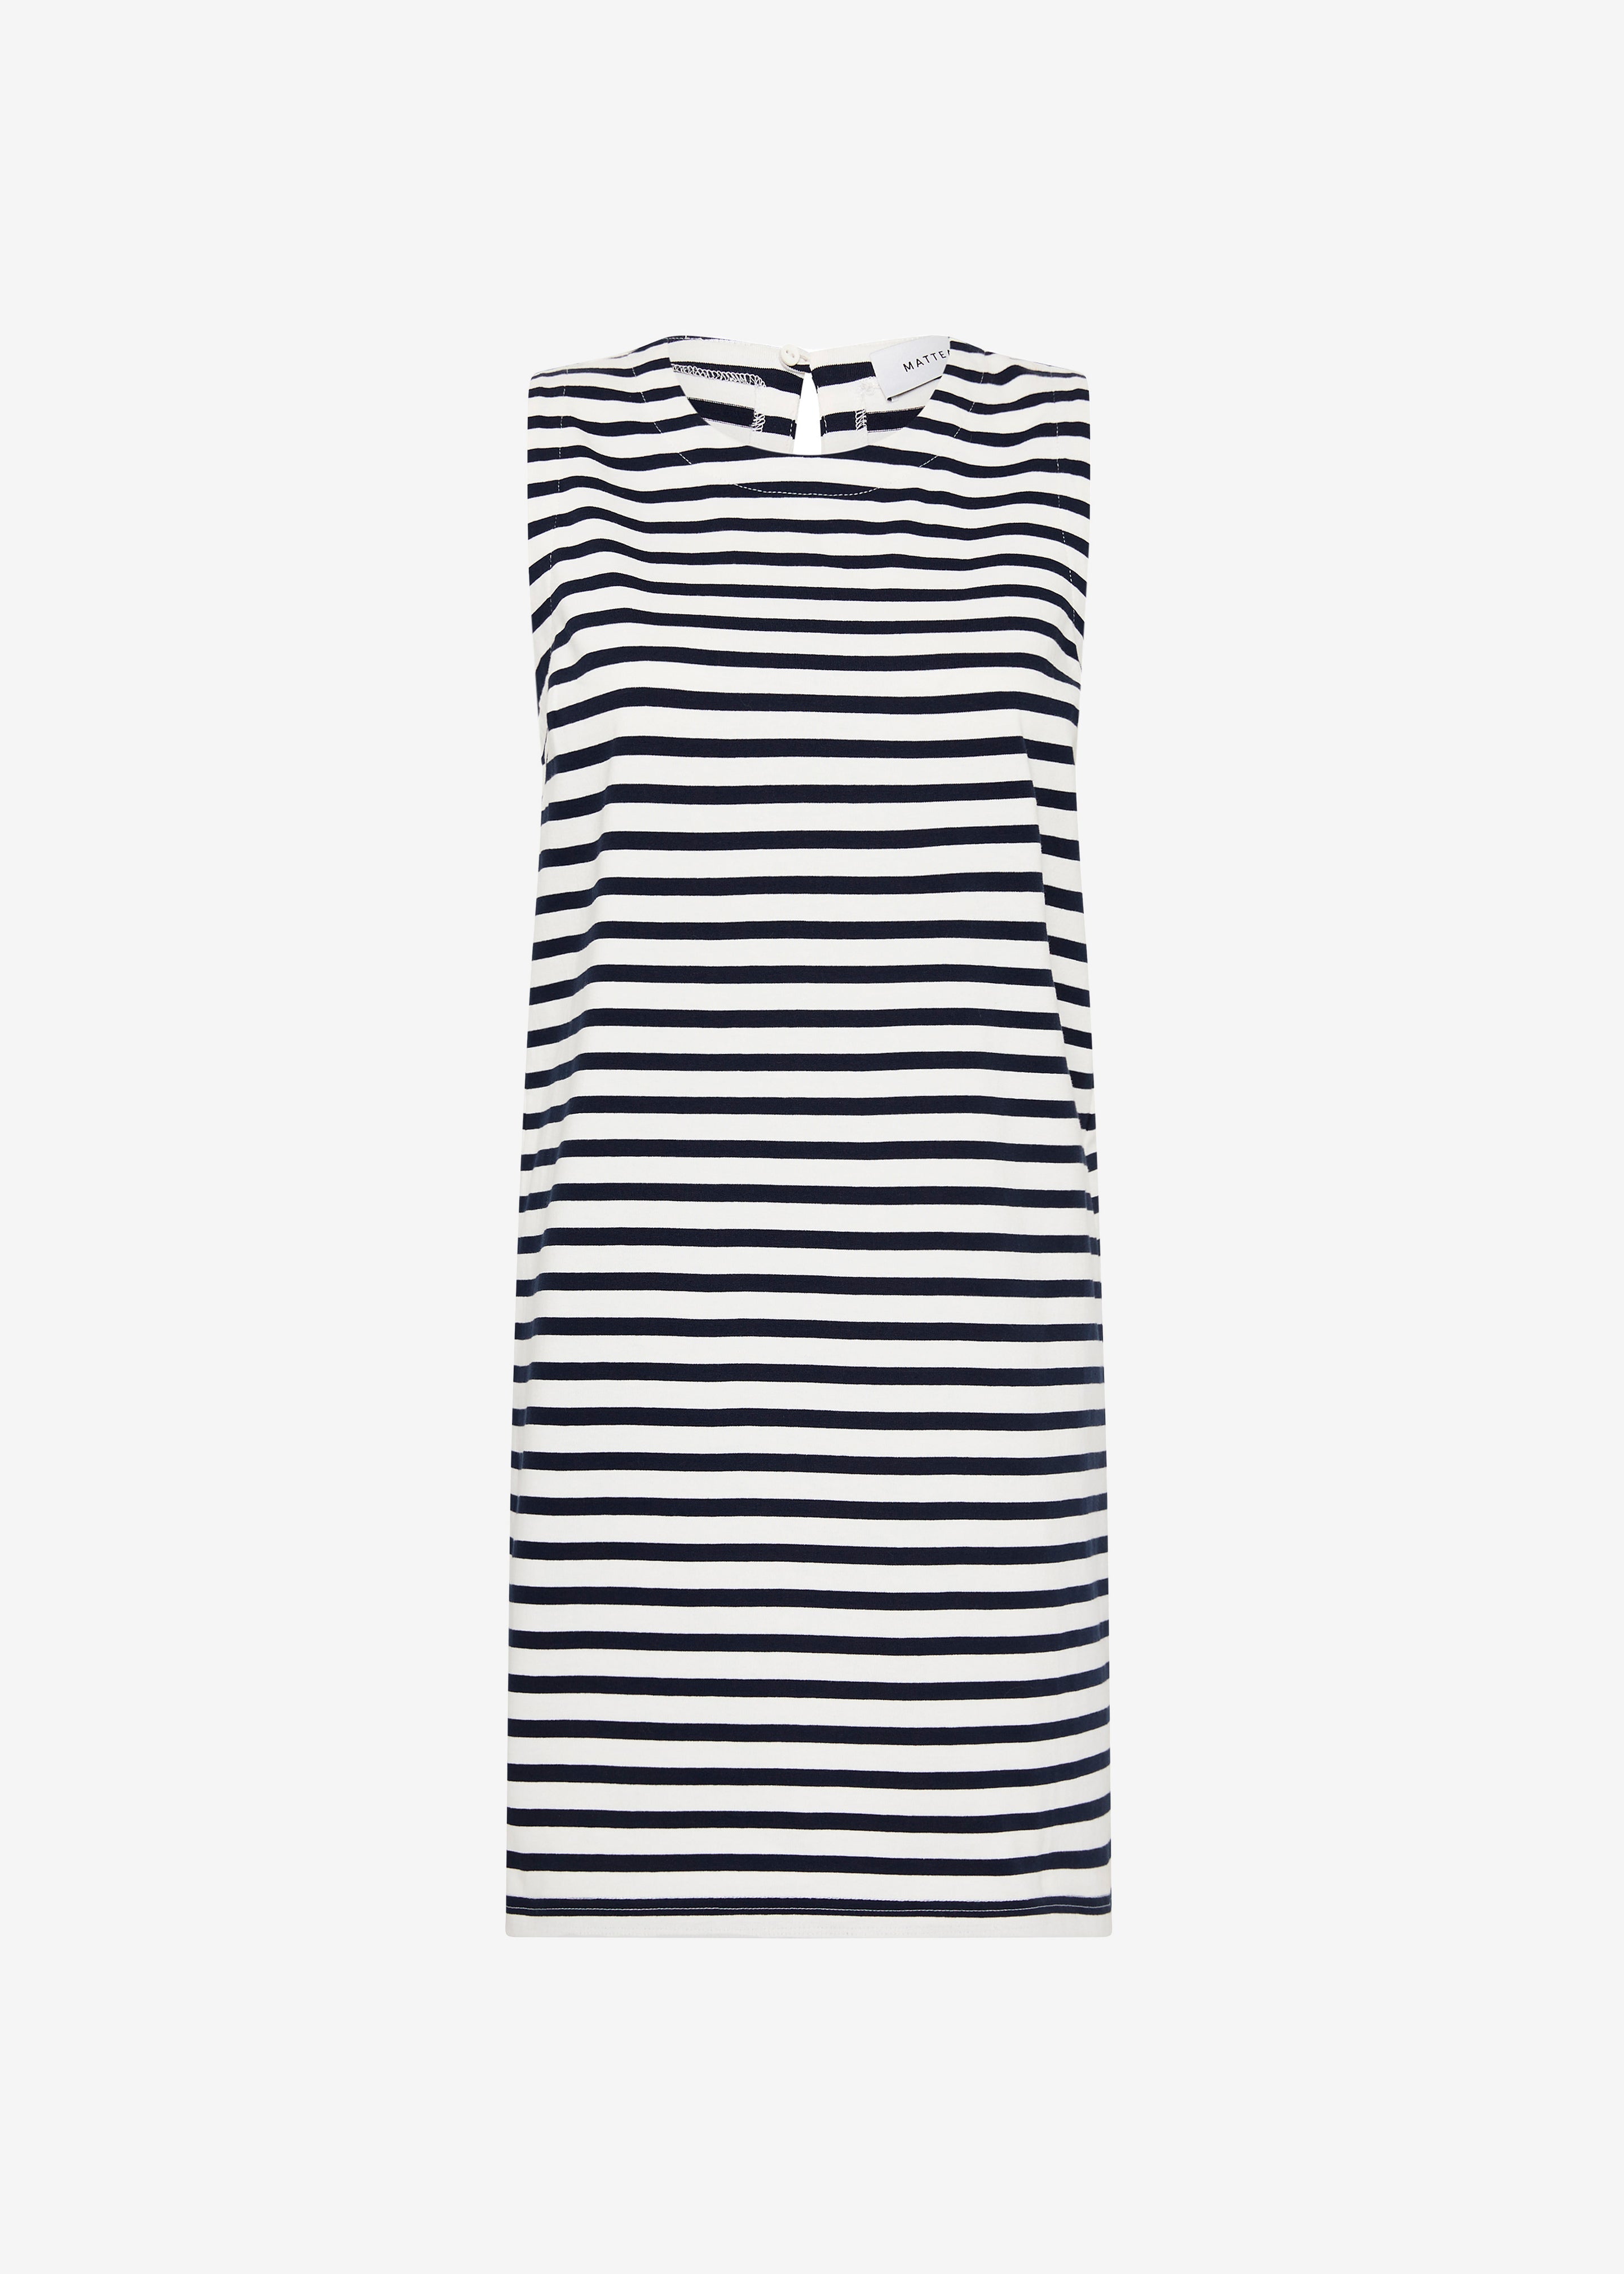 Matteau Stripe Shift Dress - Navy/White - 6